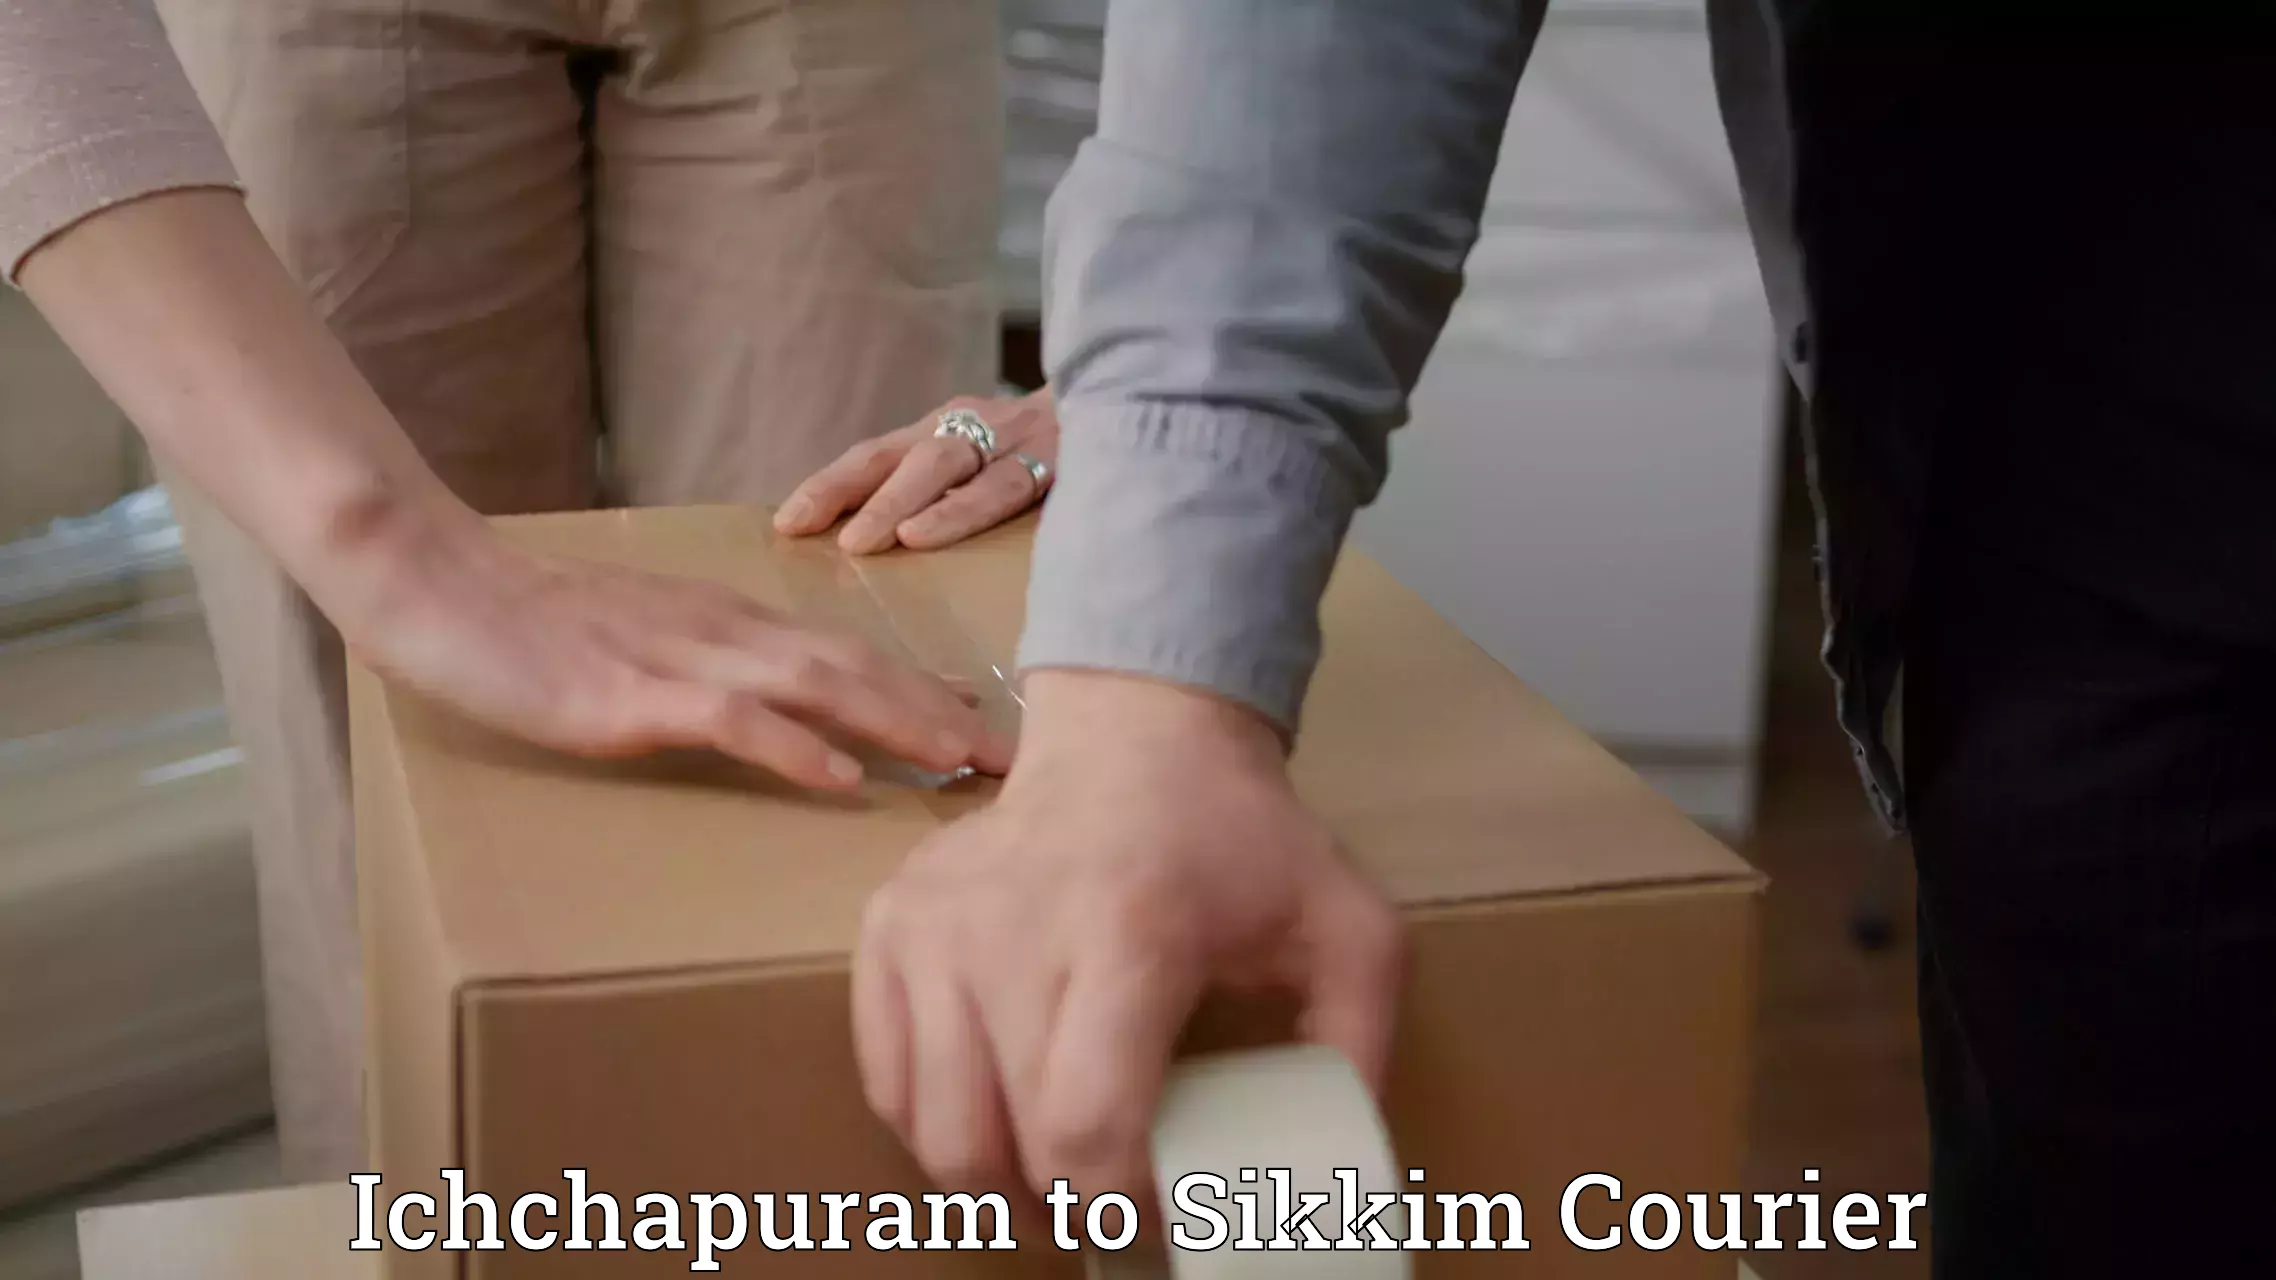 Quick courier services in Ichchapuram to Sikkim